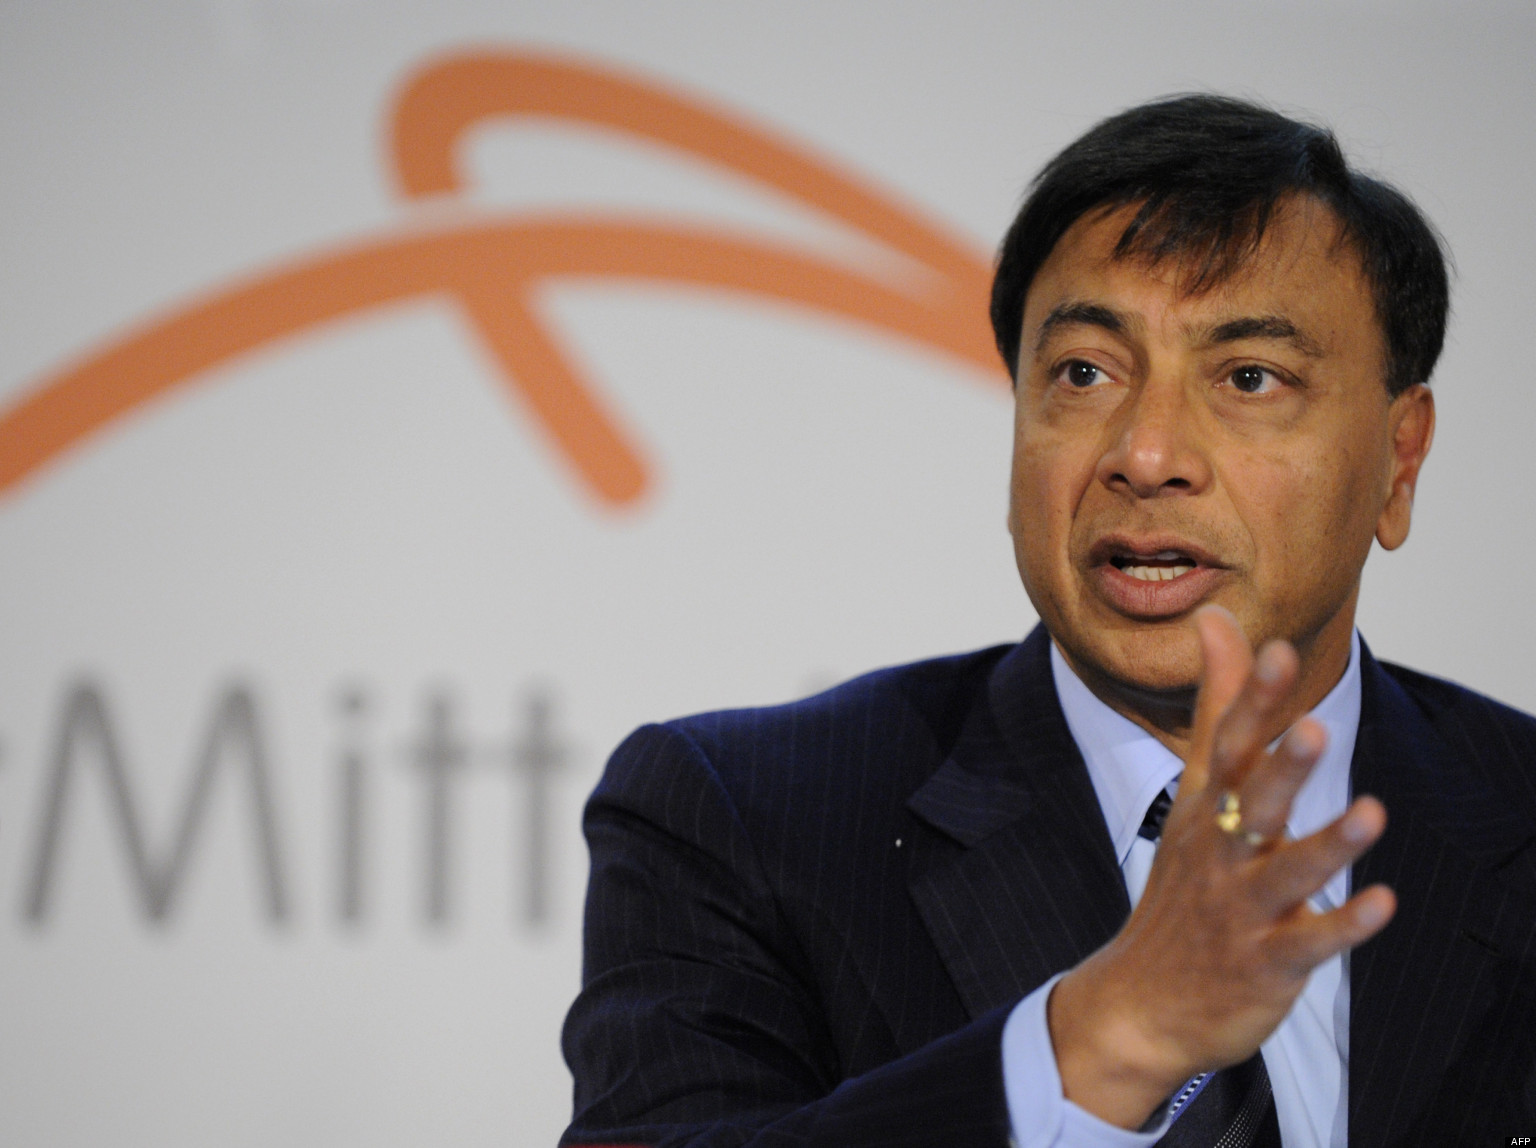 Affaire Arcelor Mittal: De nouvelles révélations de la "Lettre du Continent" qui confirment l'ampleur du "scandale" (Doc)